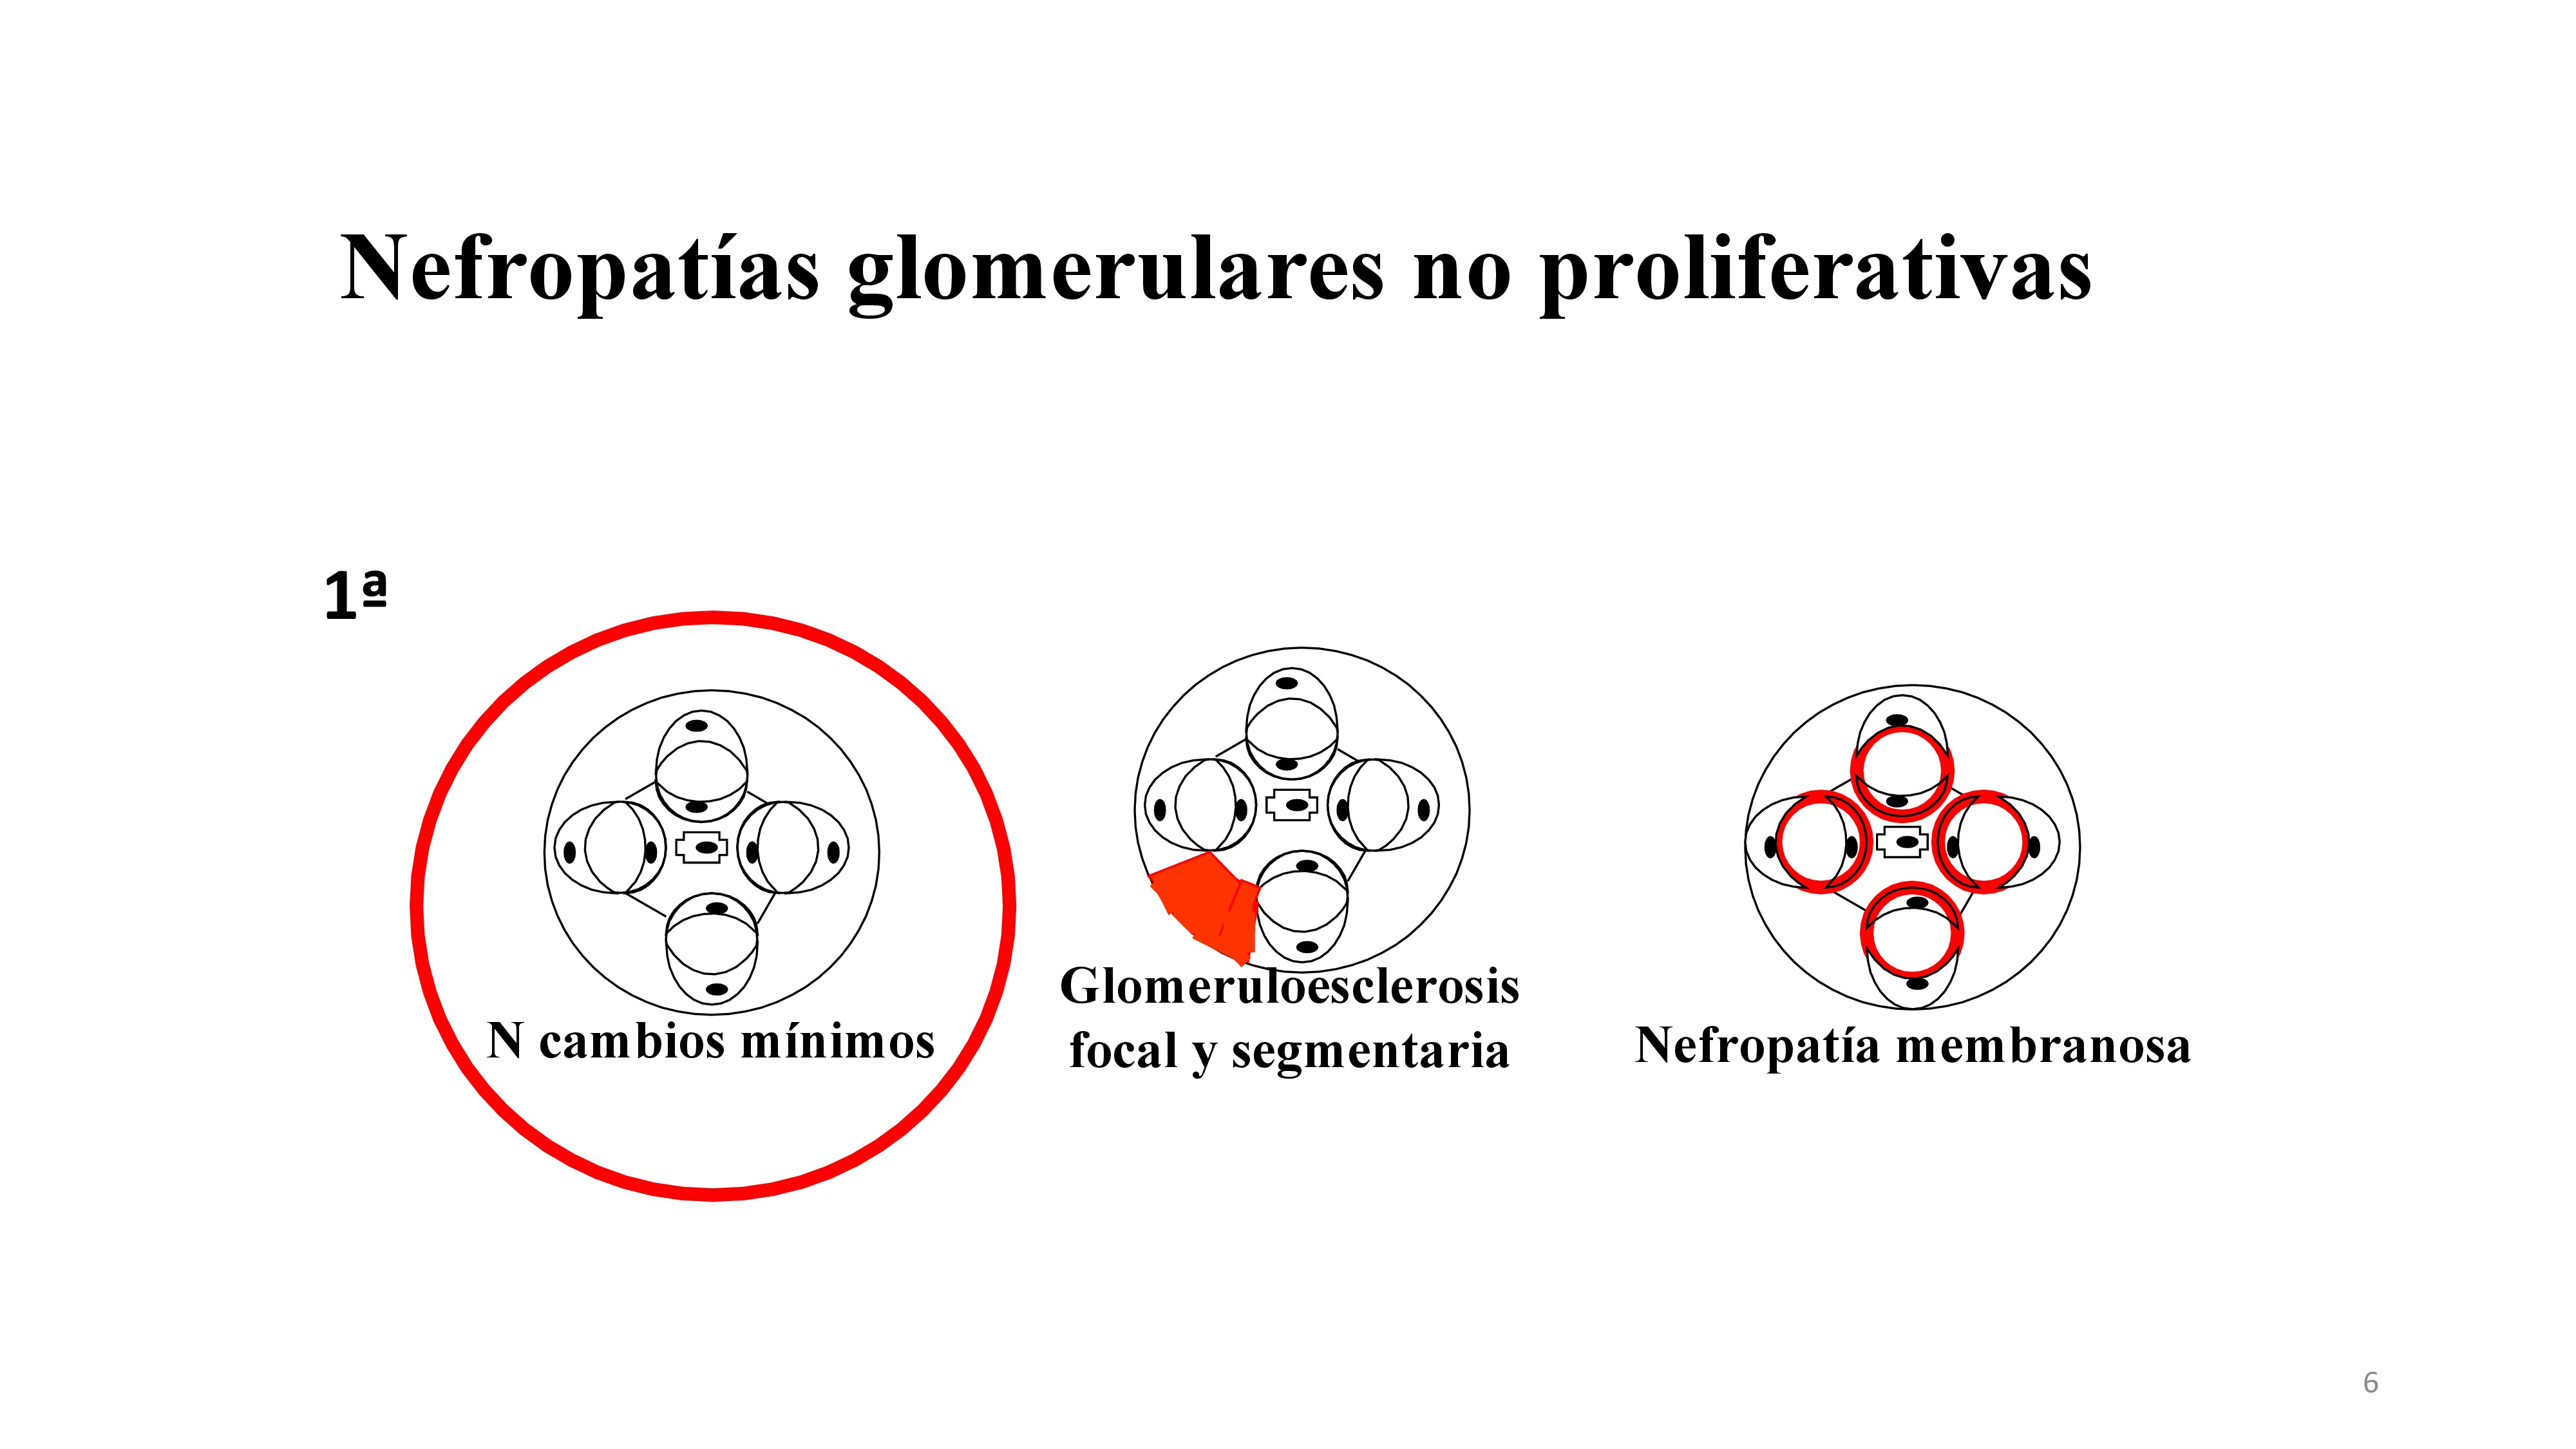 Dentro de las Glomerulonefritis primarias no proliferativas se encuentran la GMN de cambios mínimos, GMN focal y segmentaria y GMN membranosa. La primera que veremos será la GMN de Cambios mínimos.